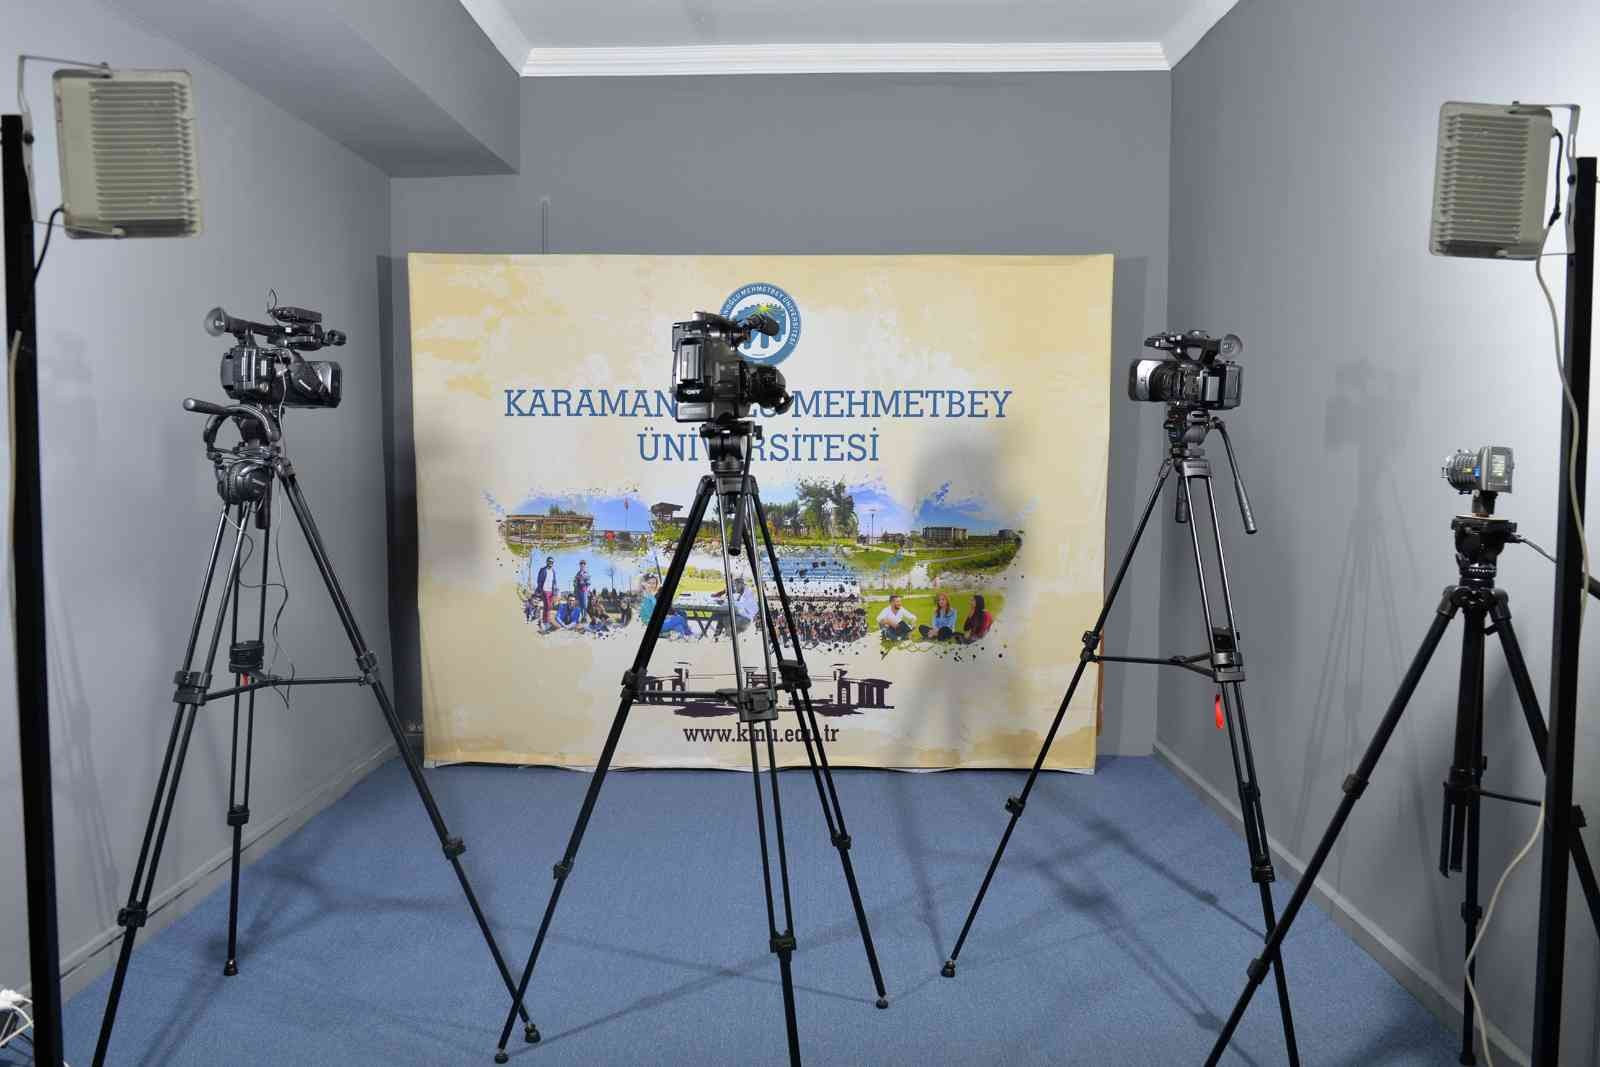 KMÜ radyo ve televizyonu için ilk adım atıldı #karaman